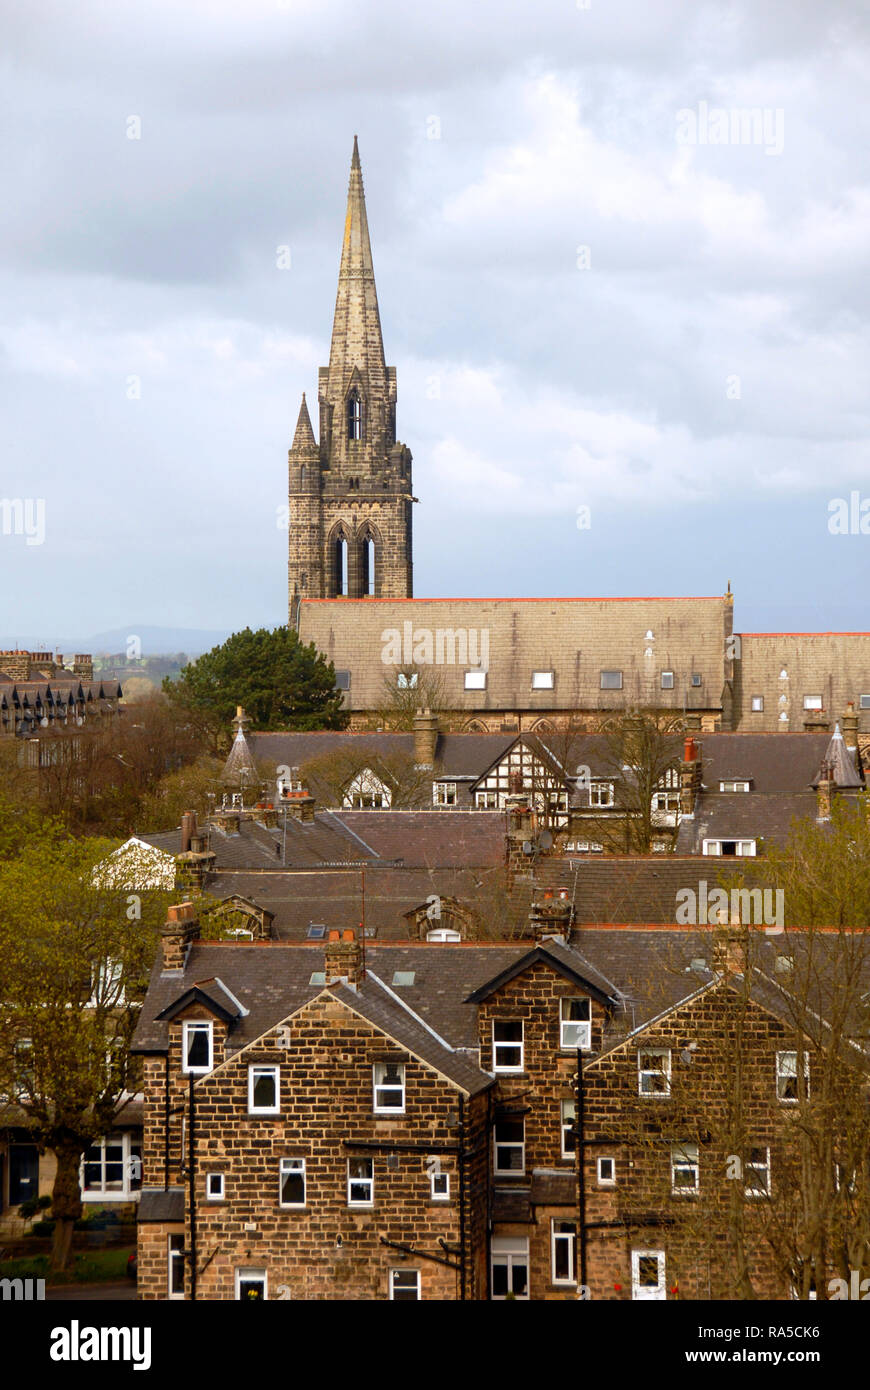 Eglise avec clocher, vue dominant une propriété résidentielle, Harrogate, Yorkshire, Angleterre Banque D'Images